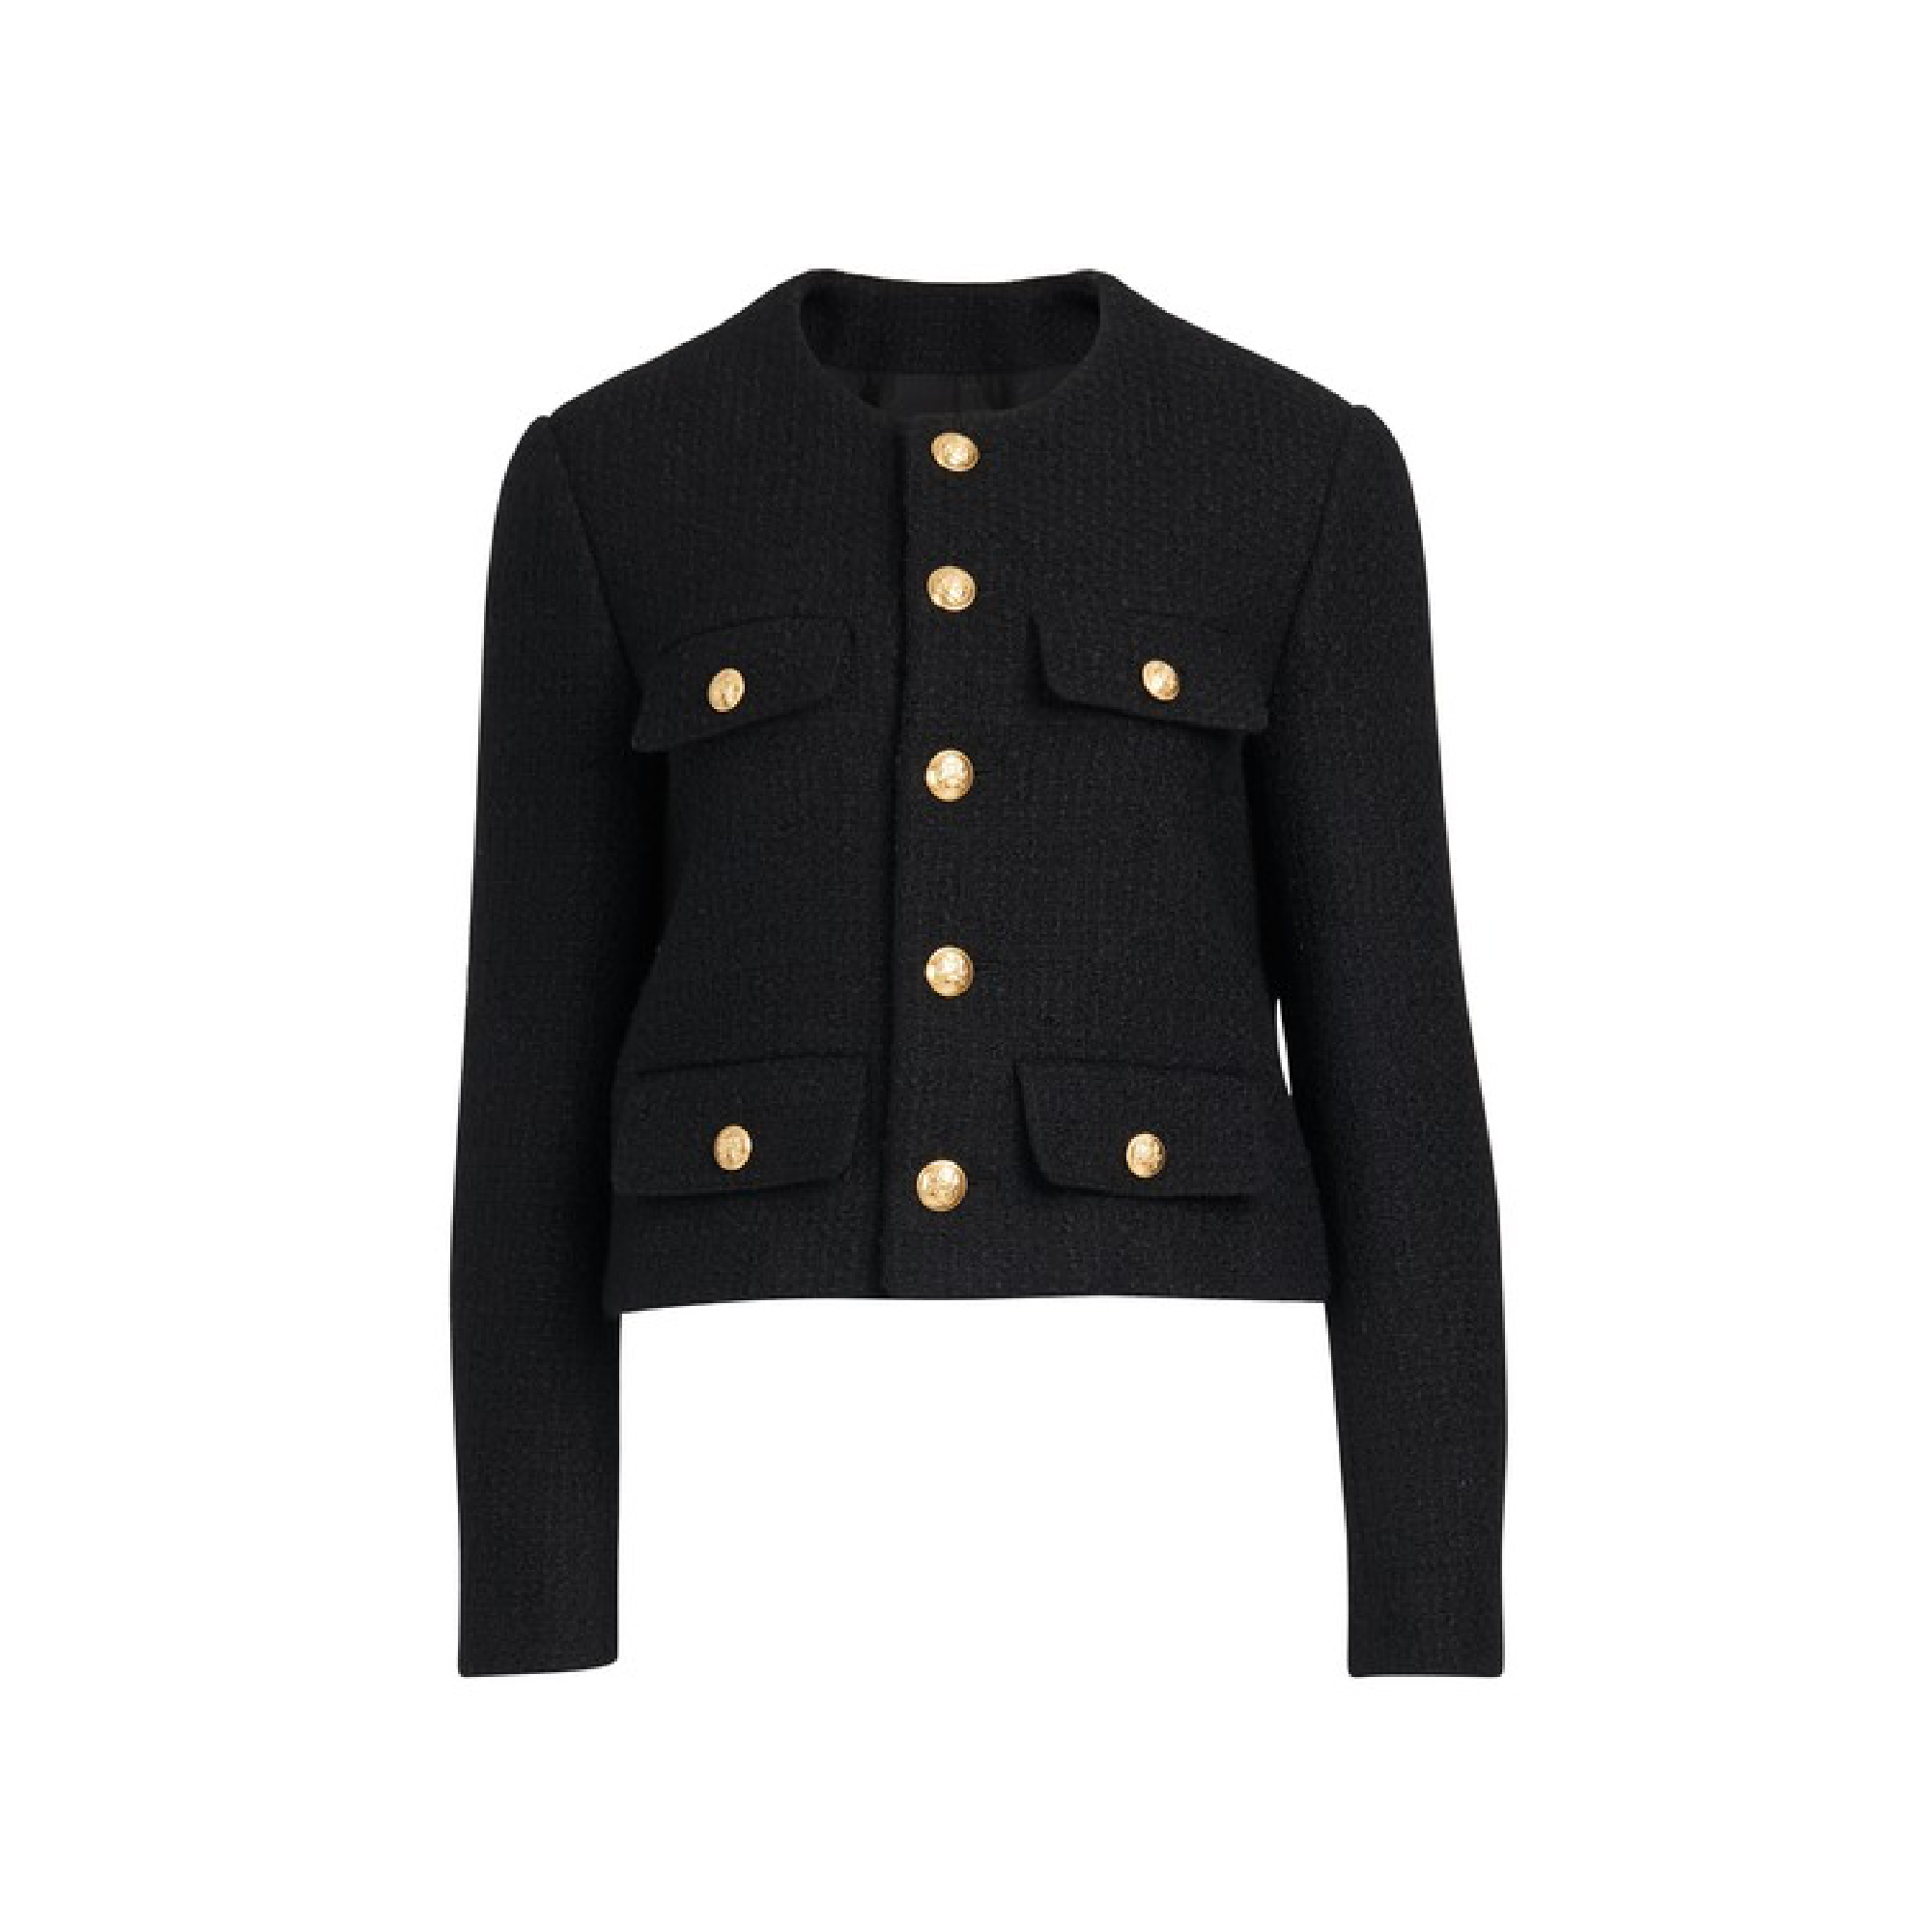 Celine Tweed Jacket | vlr.eng.br